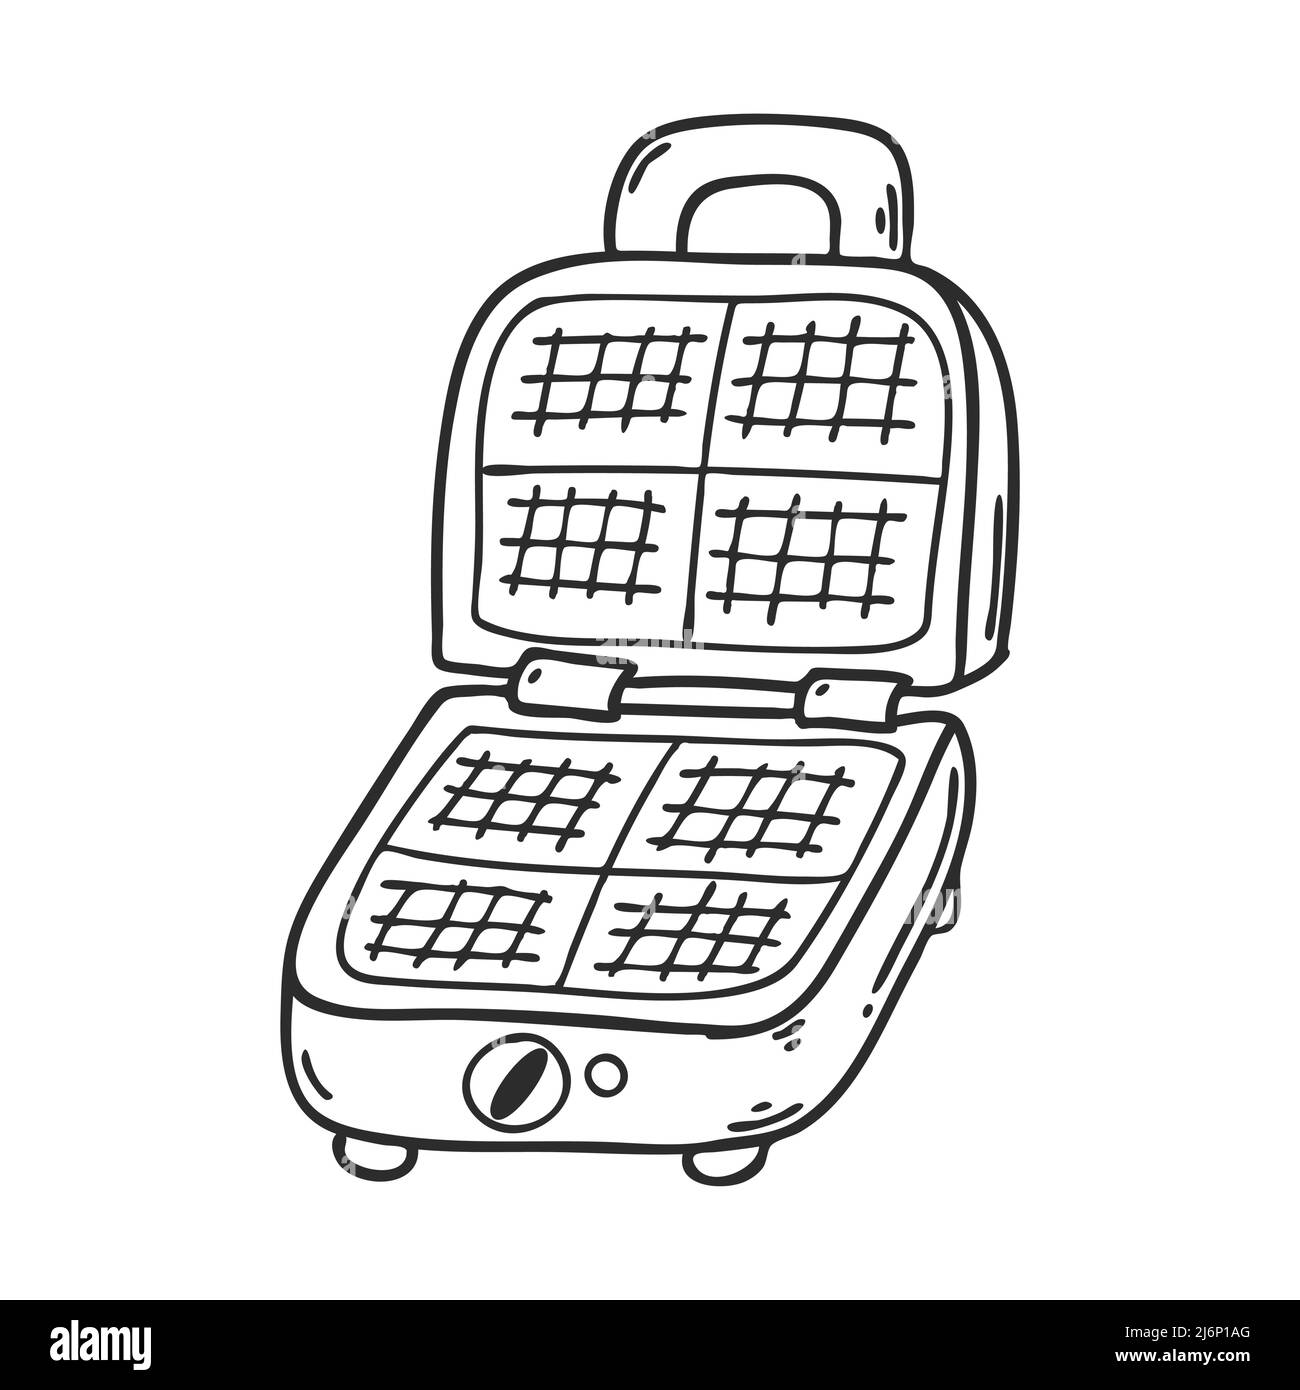 Elektrisches Waffeleisen im Doodle-Stil. Küchengeräte zum Kochen von Waffeln. Designelement für Menügestaltung, Rezepte und Lebensmittelverpackungen. Von Hand gezeichnet Stock Vektor